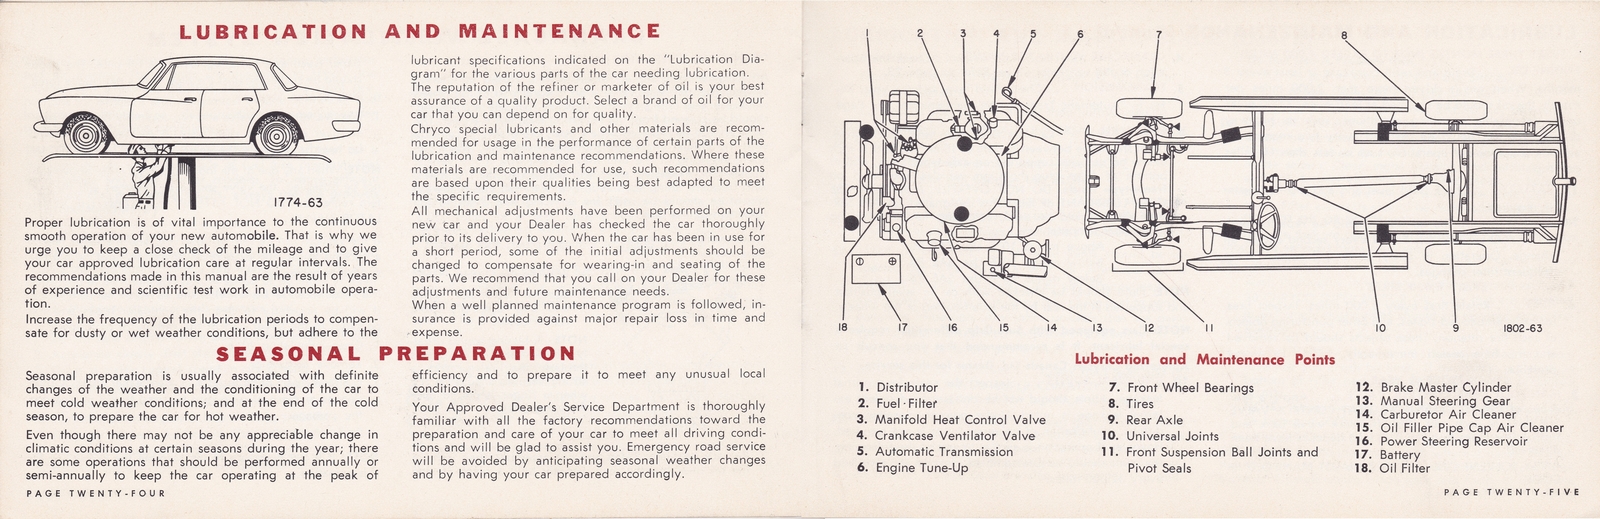 n_1964 Chrysler Owner's Manual (Cdn)-24-25.jpg